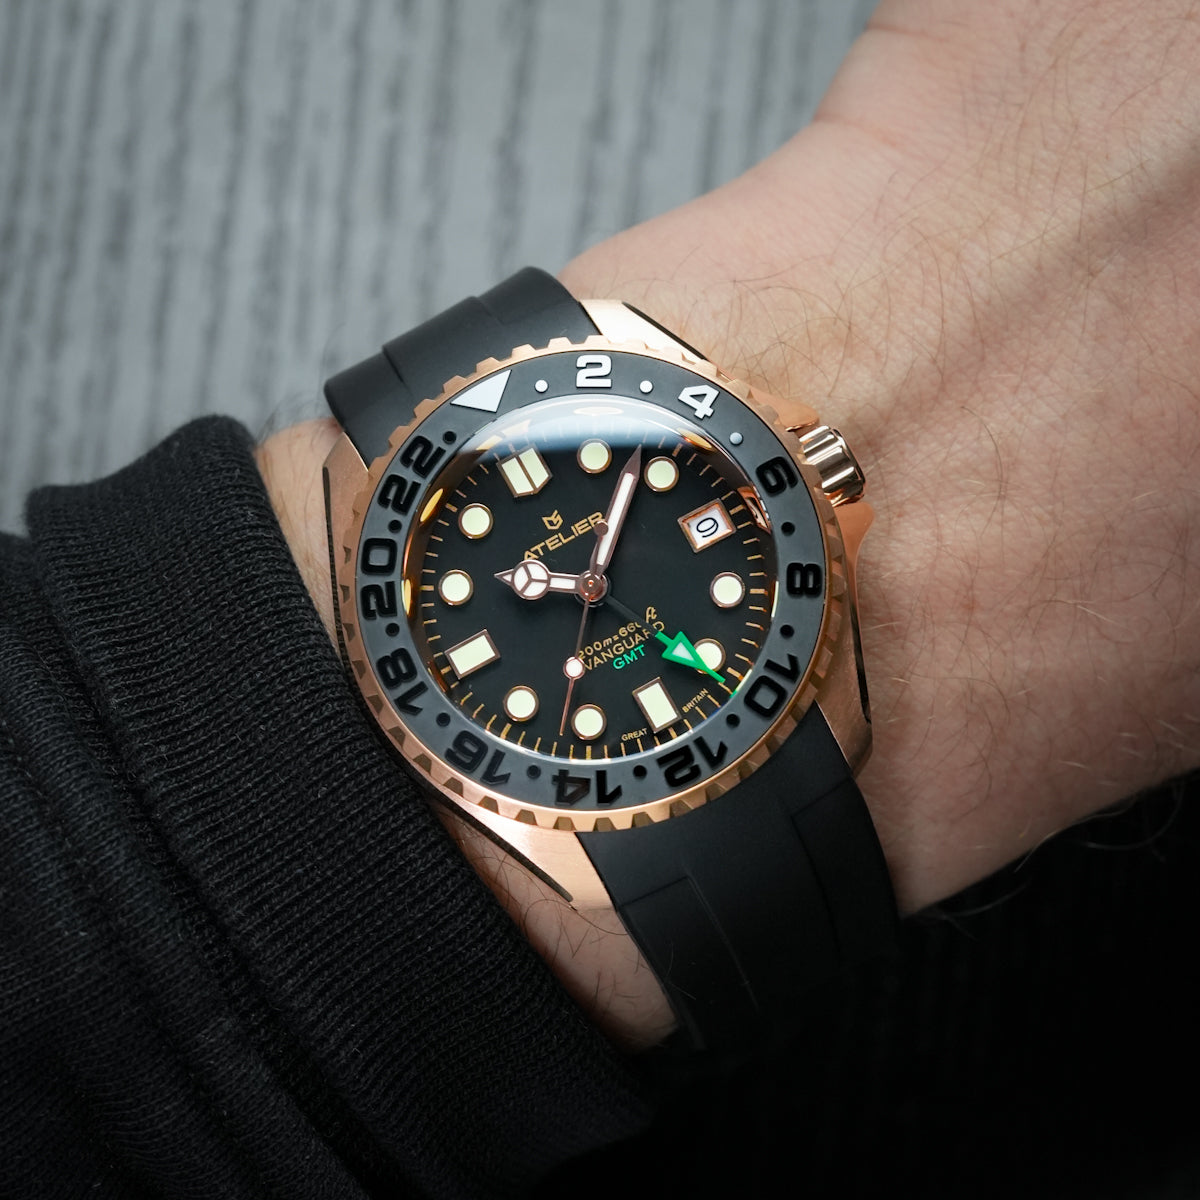 GMT watch wrist shot